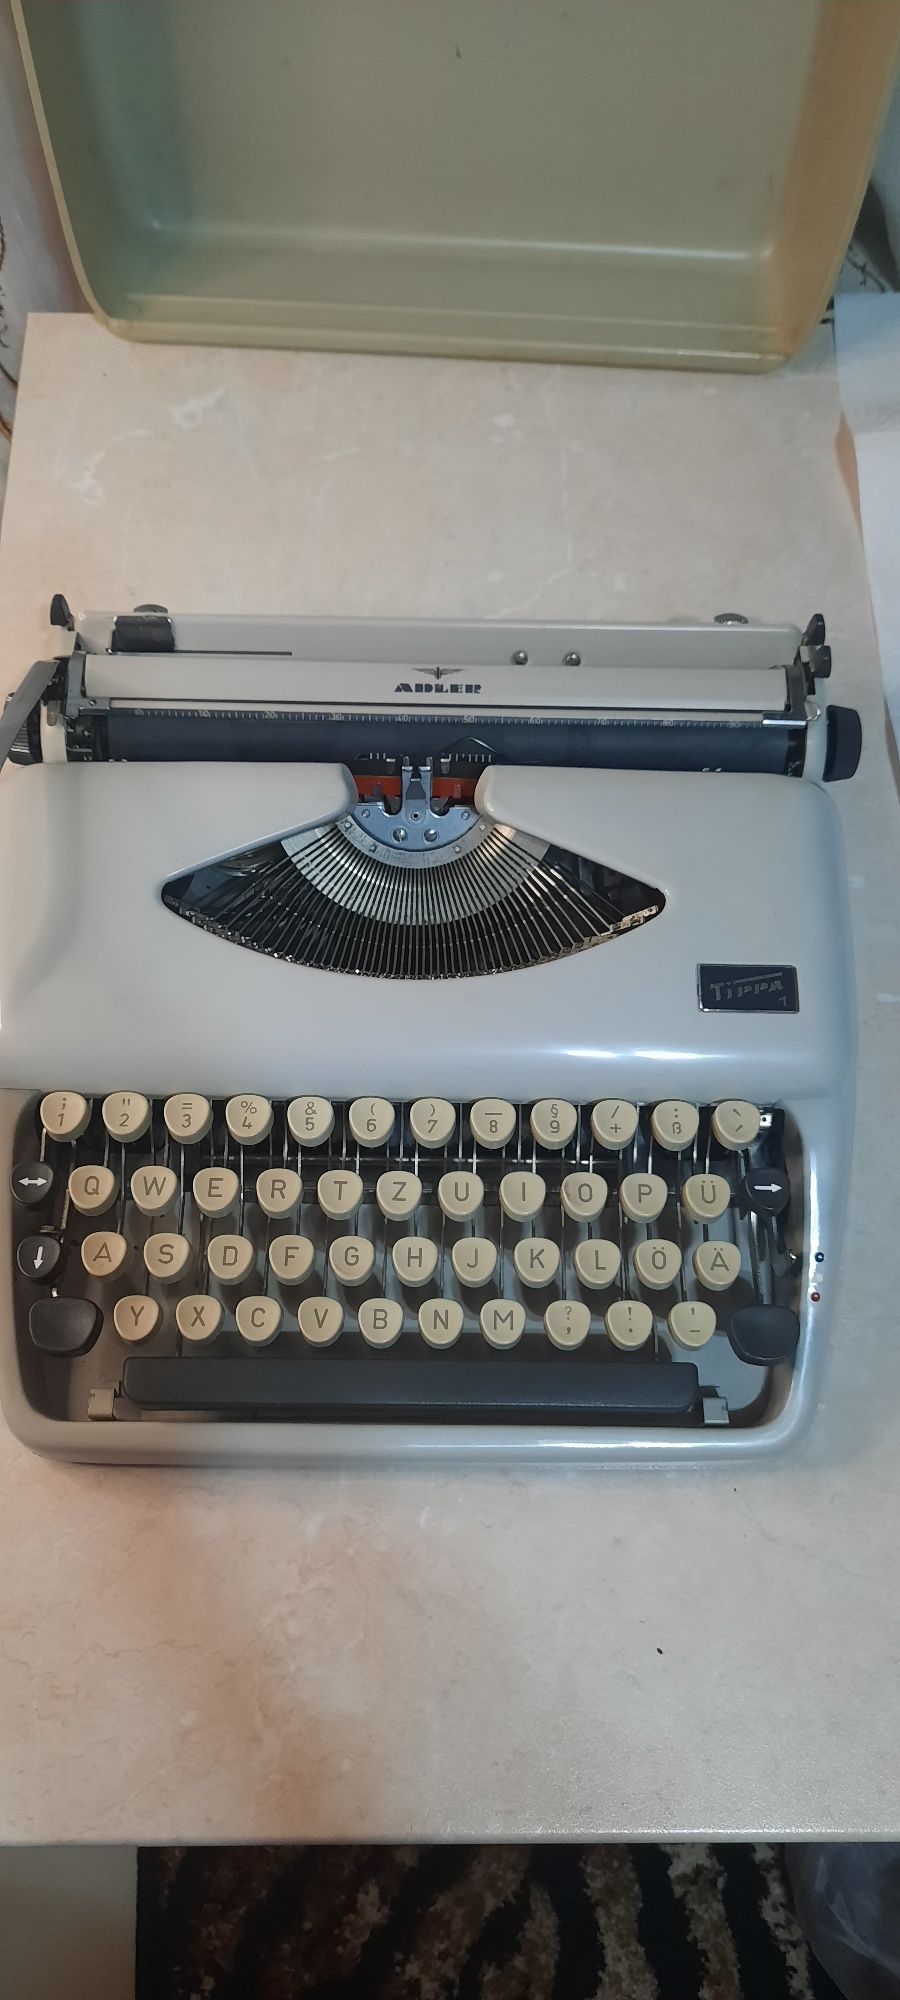 Mașină de scris Adler Tippa impecabilă